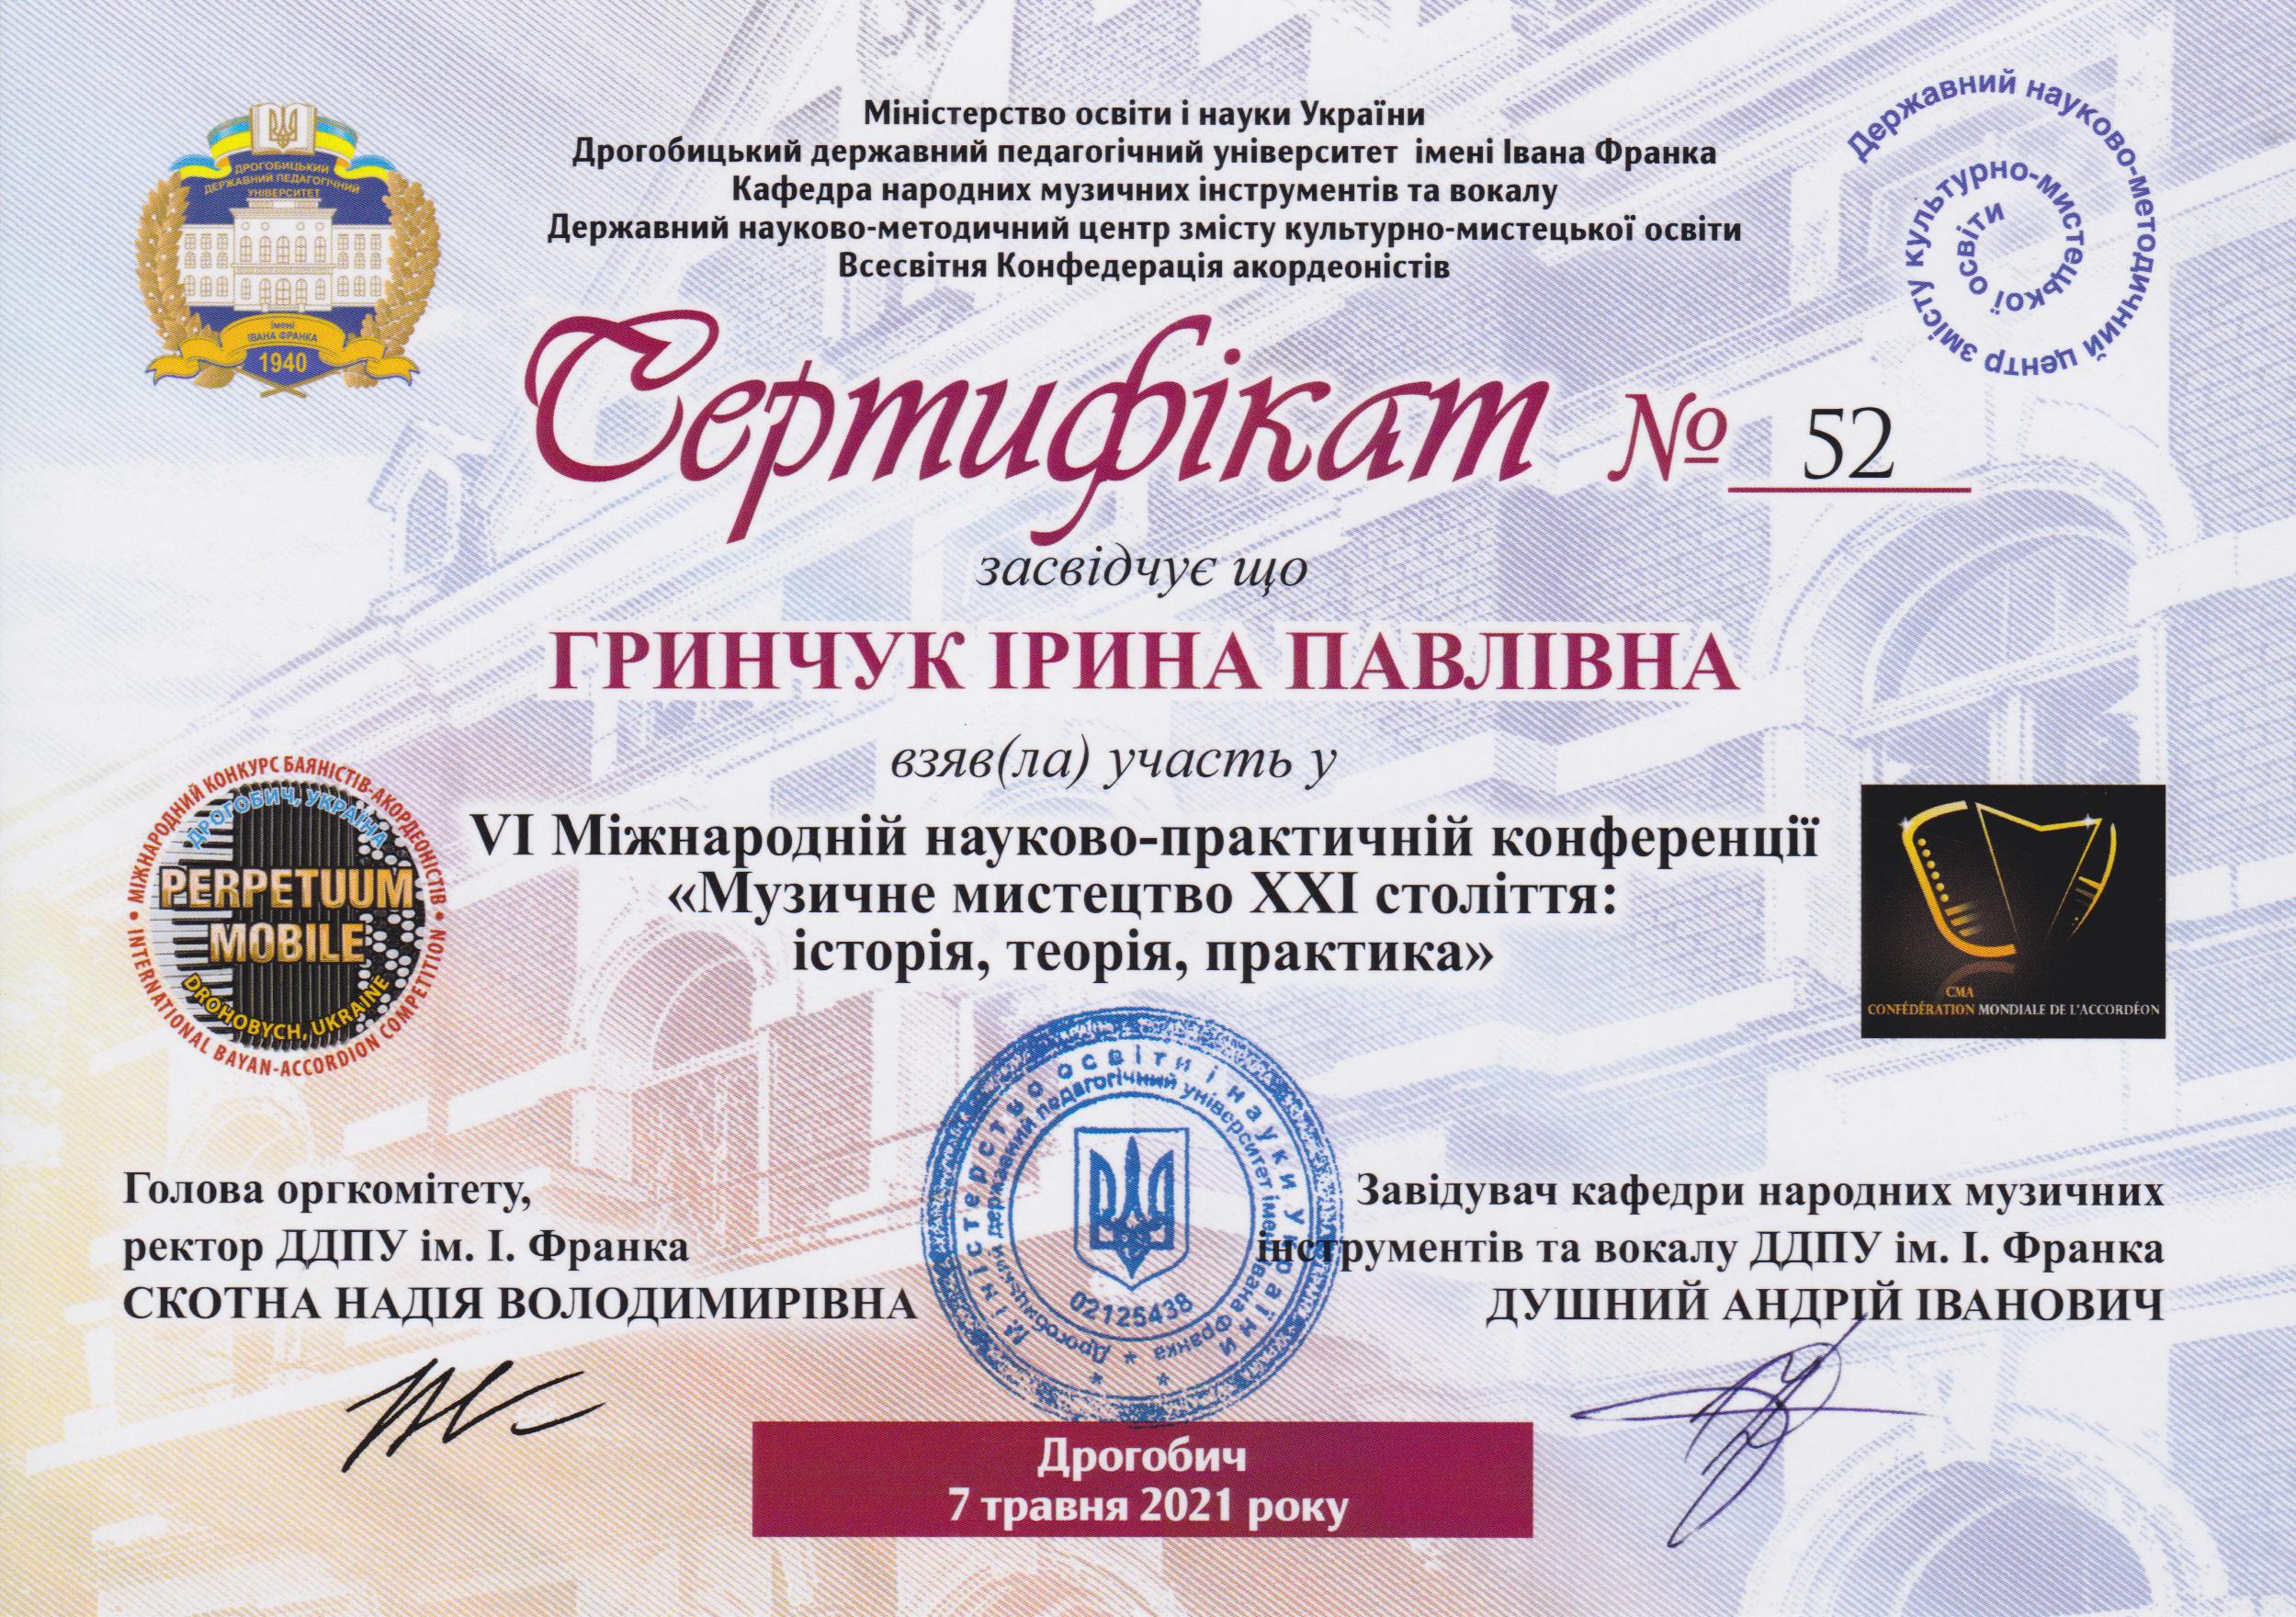 Сертифікат І.Гринчук